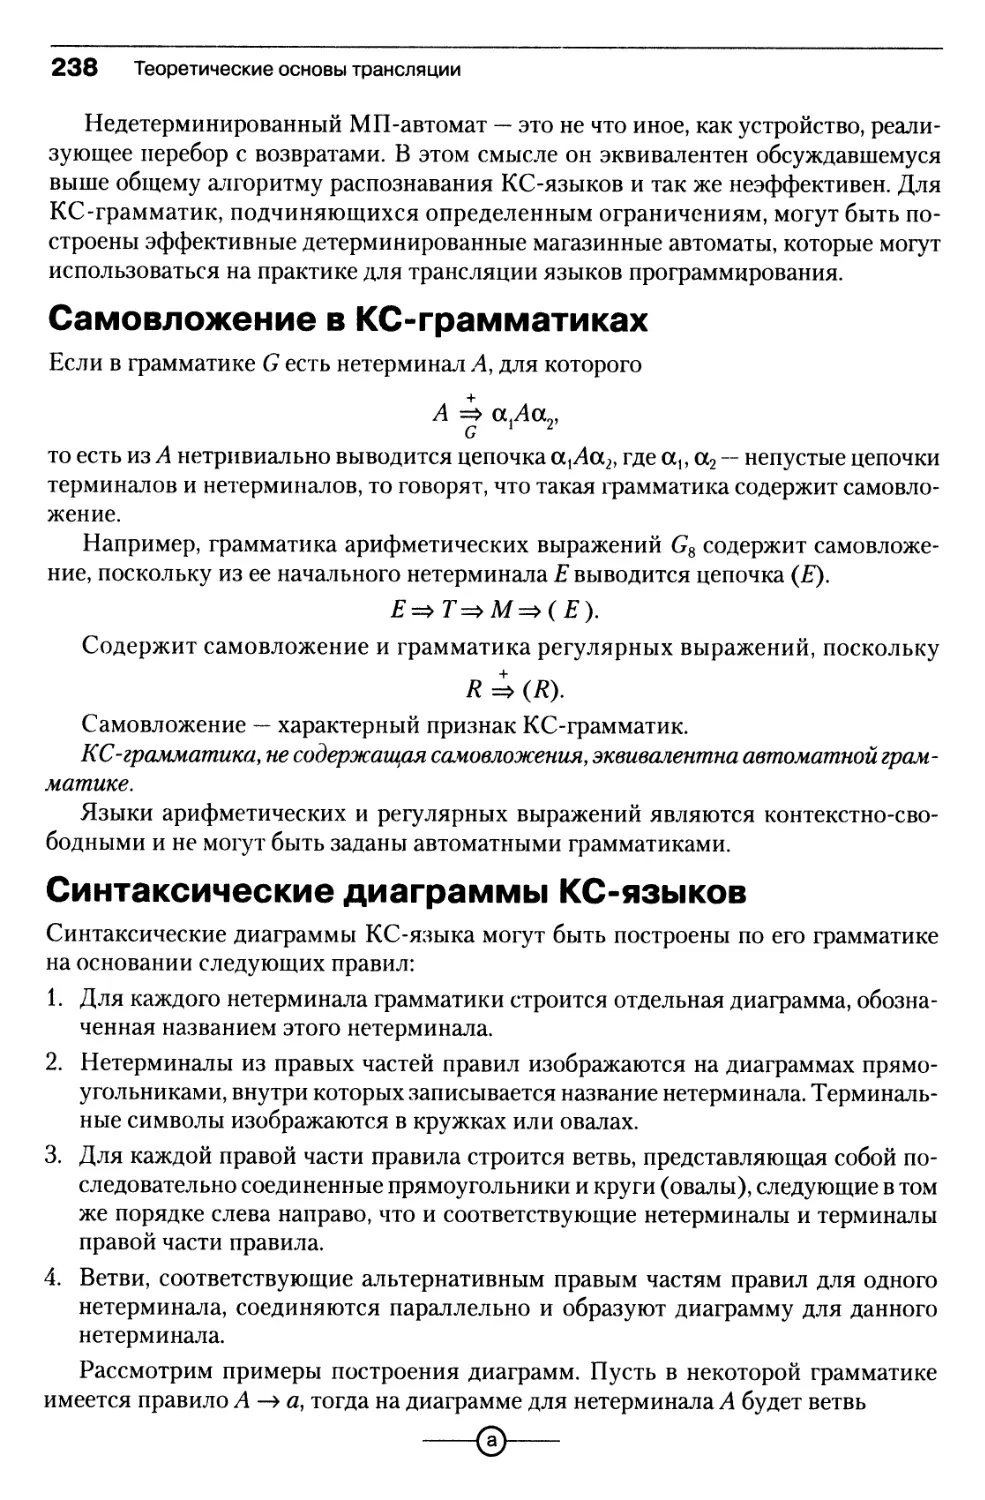 Самовложение в КС-грамматиках
Синтаксические диаграммы КС-языков